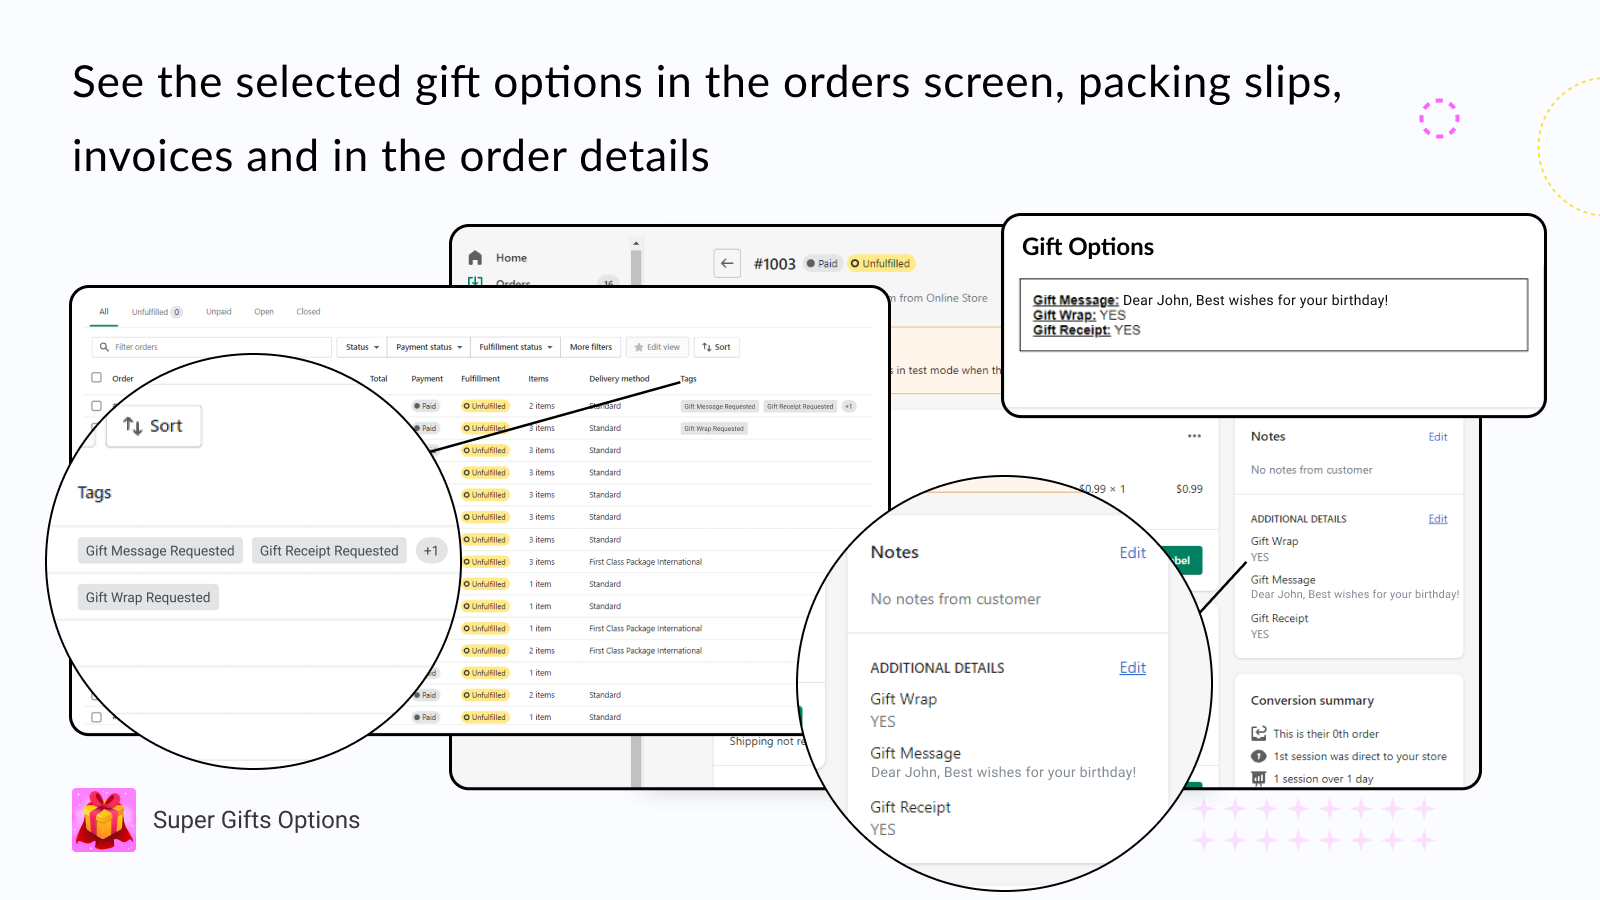 Les options de cadeaux peuvent être ajoutées au bordereau de colisage et aux factures